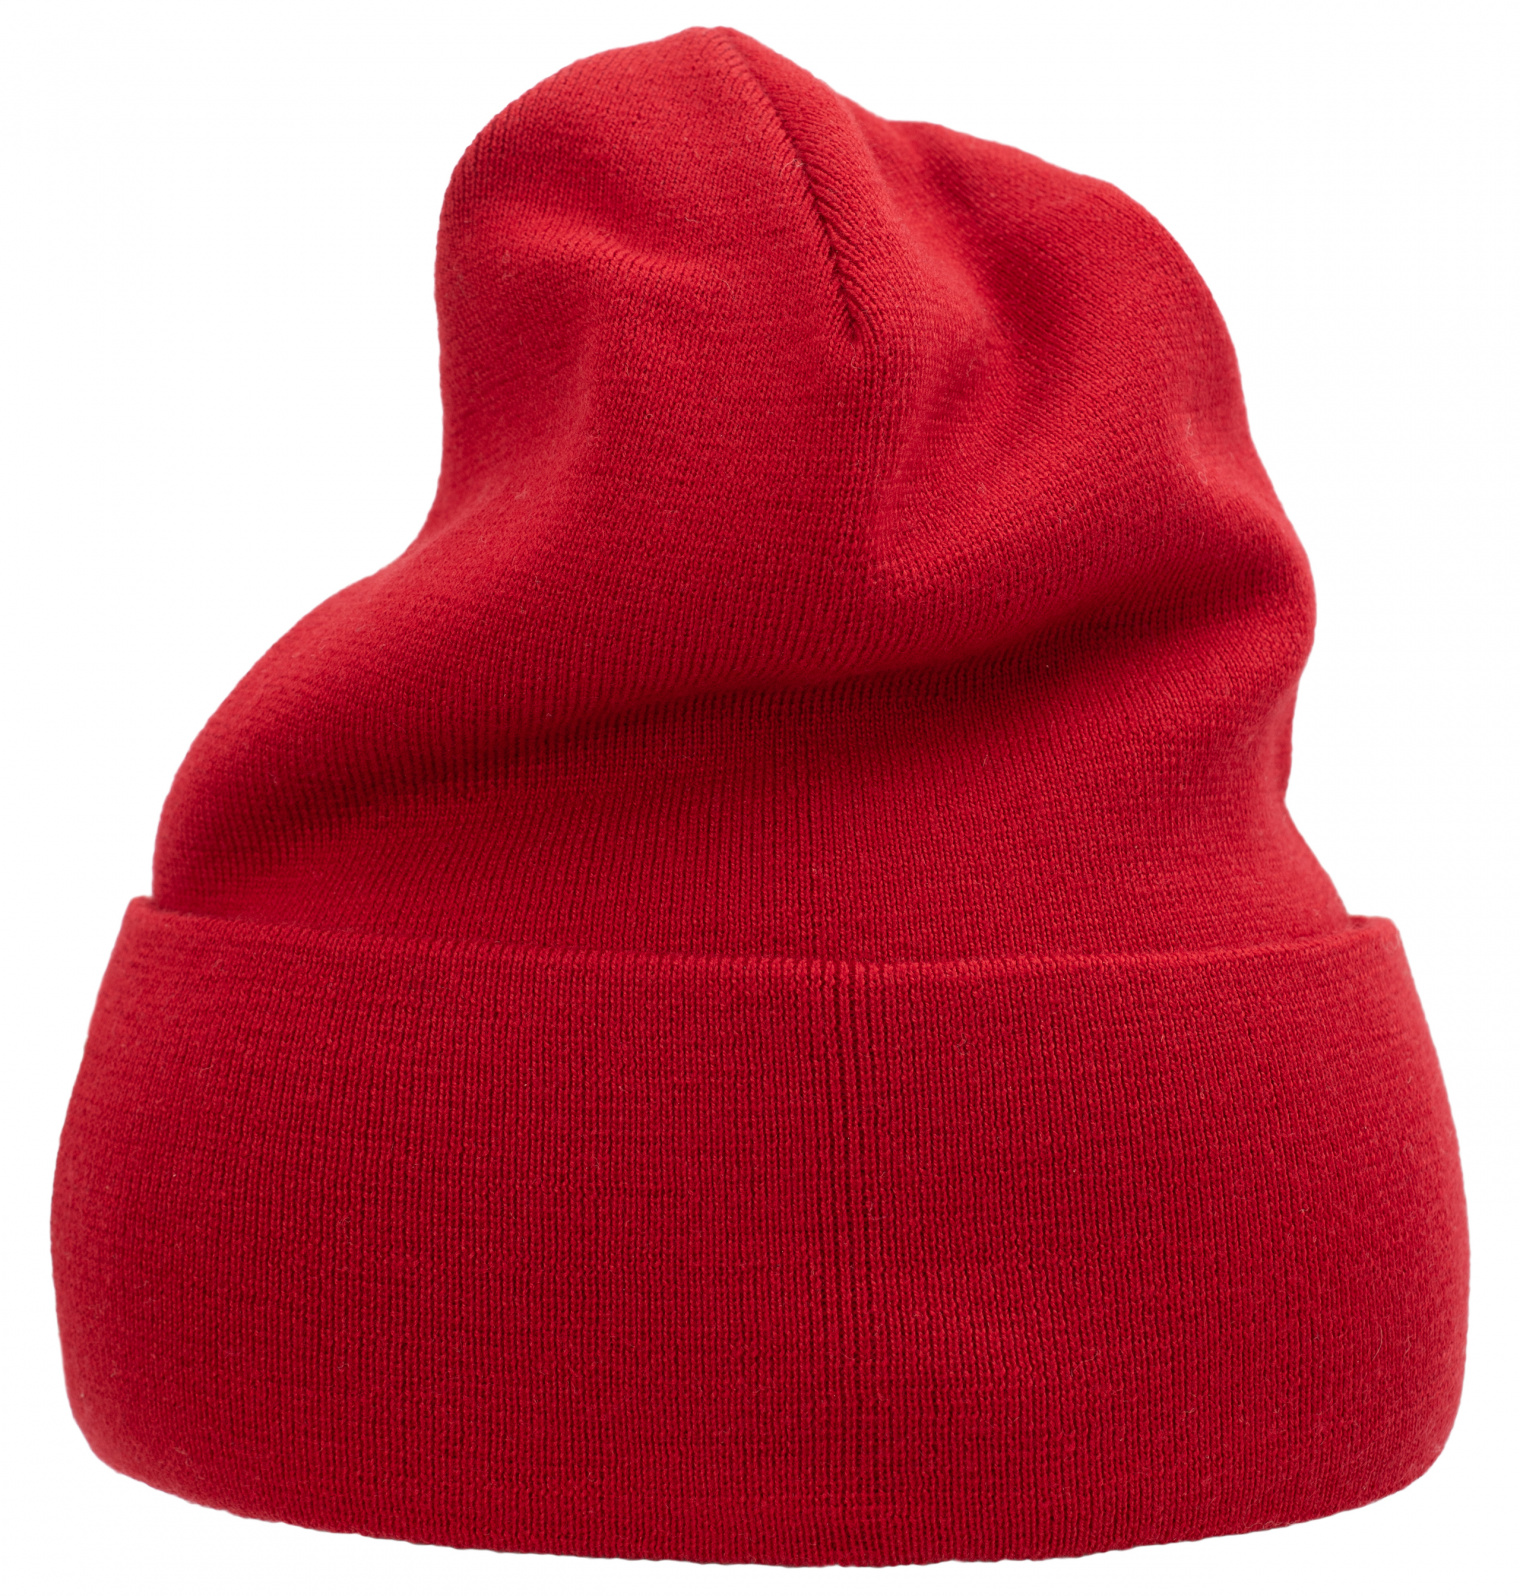 OAMC Красная шапка с патчем